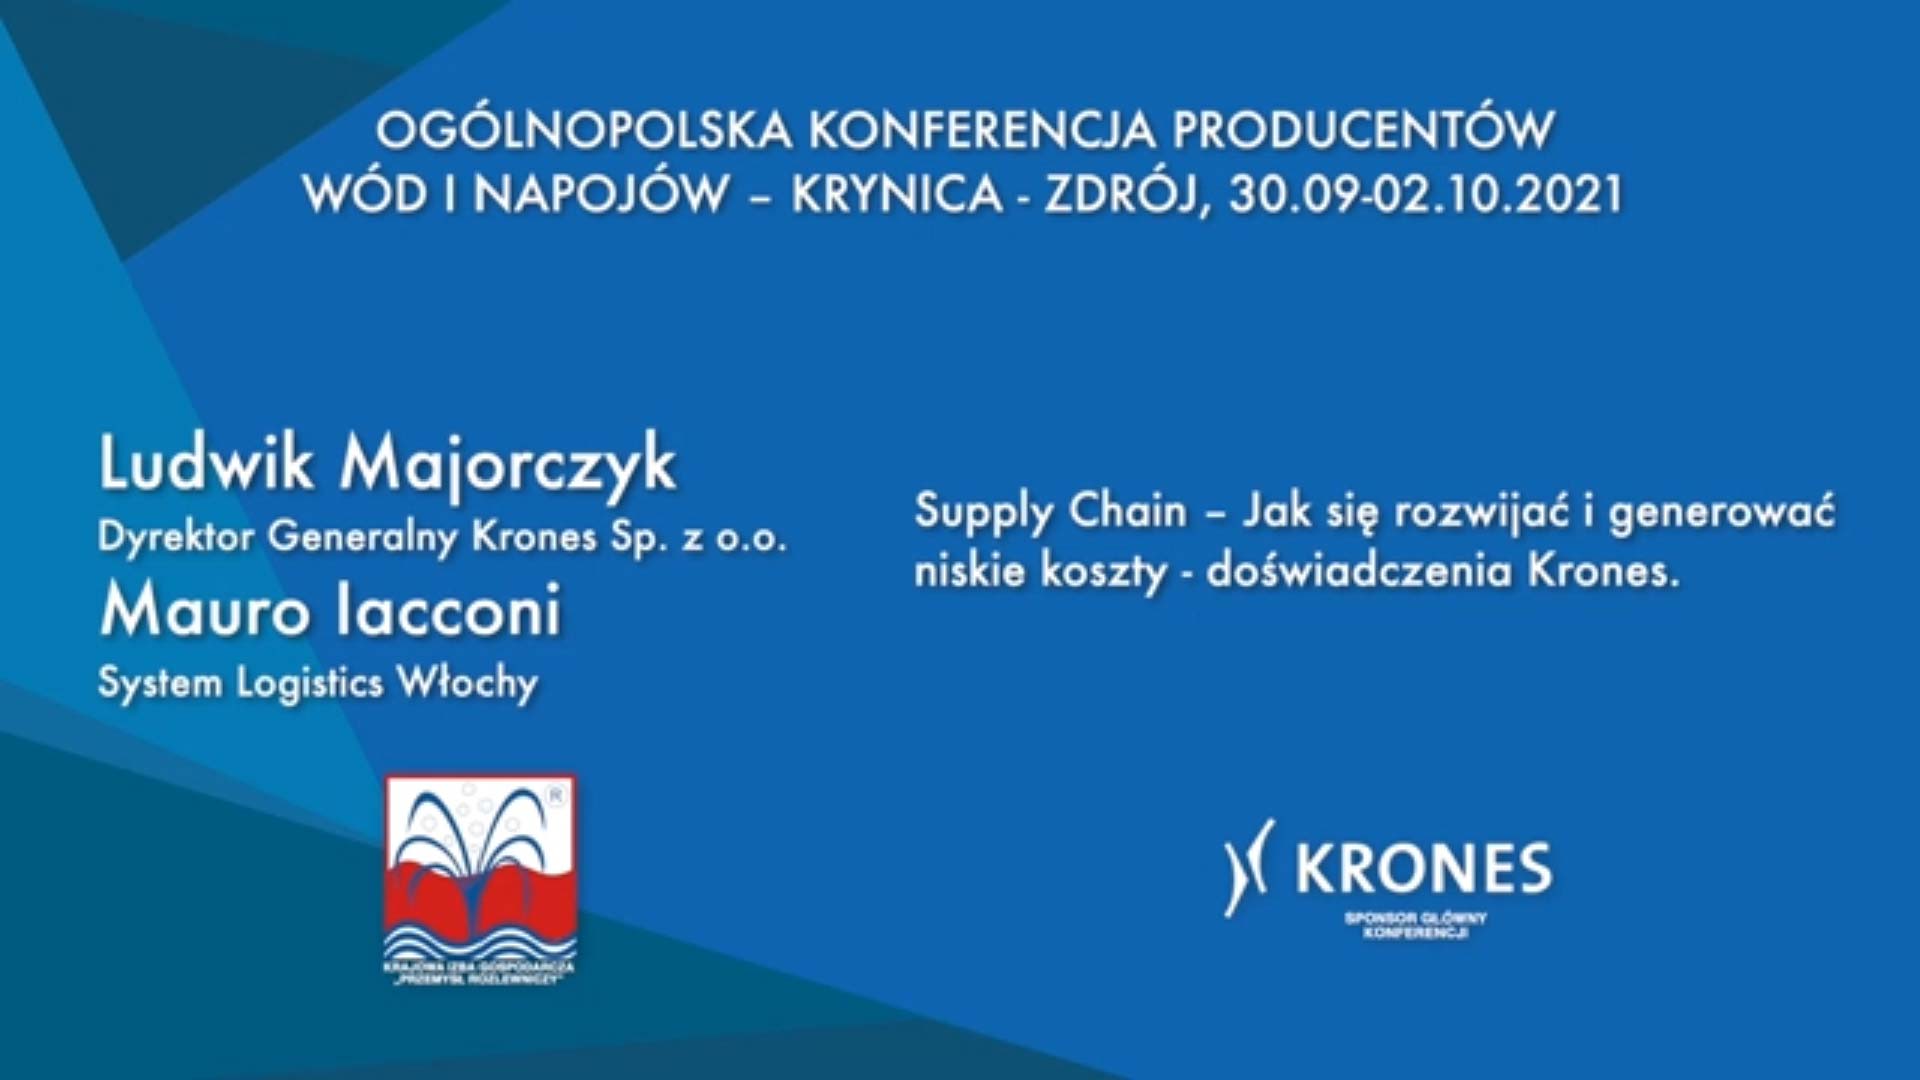 LUDWIK MAJORCZYK i MAURO IACCONI: “Supply Chain – jak się rozwijać i generować niskie koszty – doświadczenia Krones.”